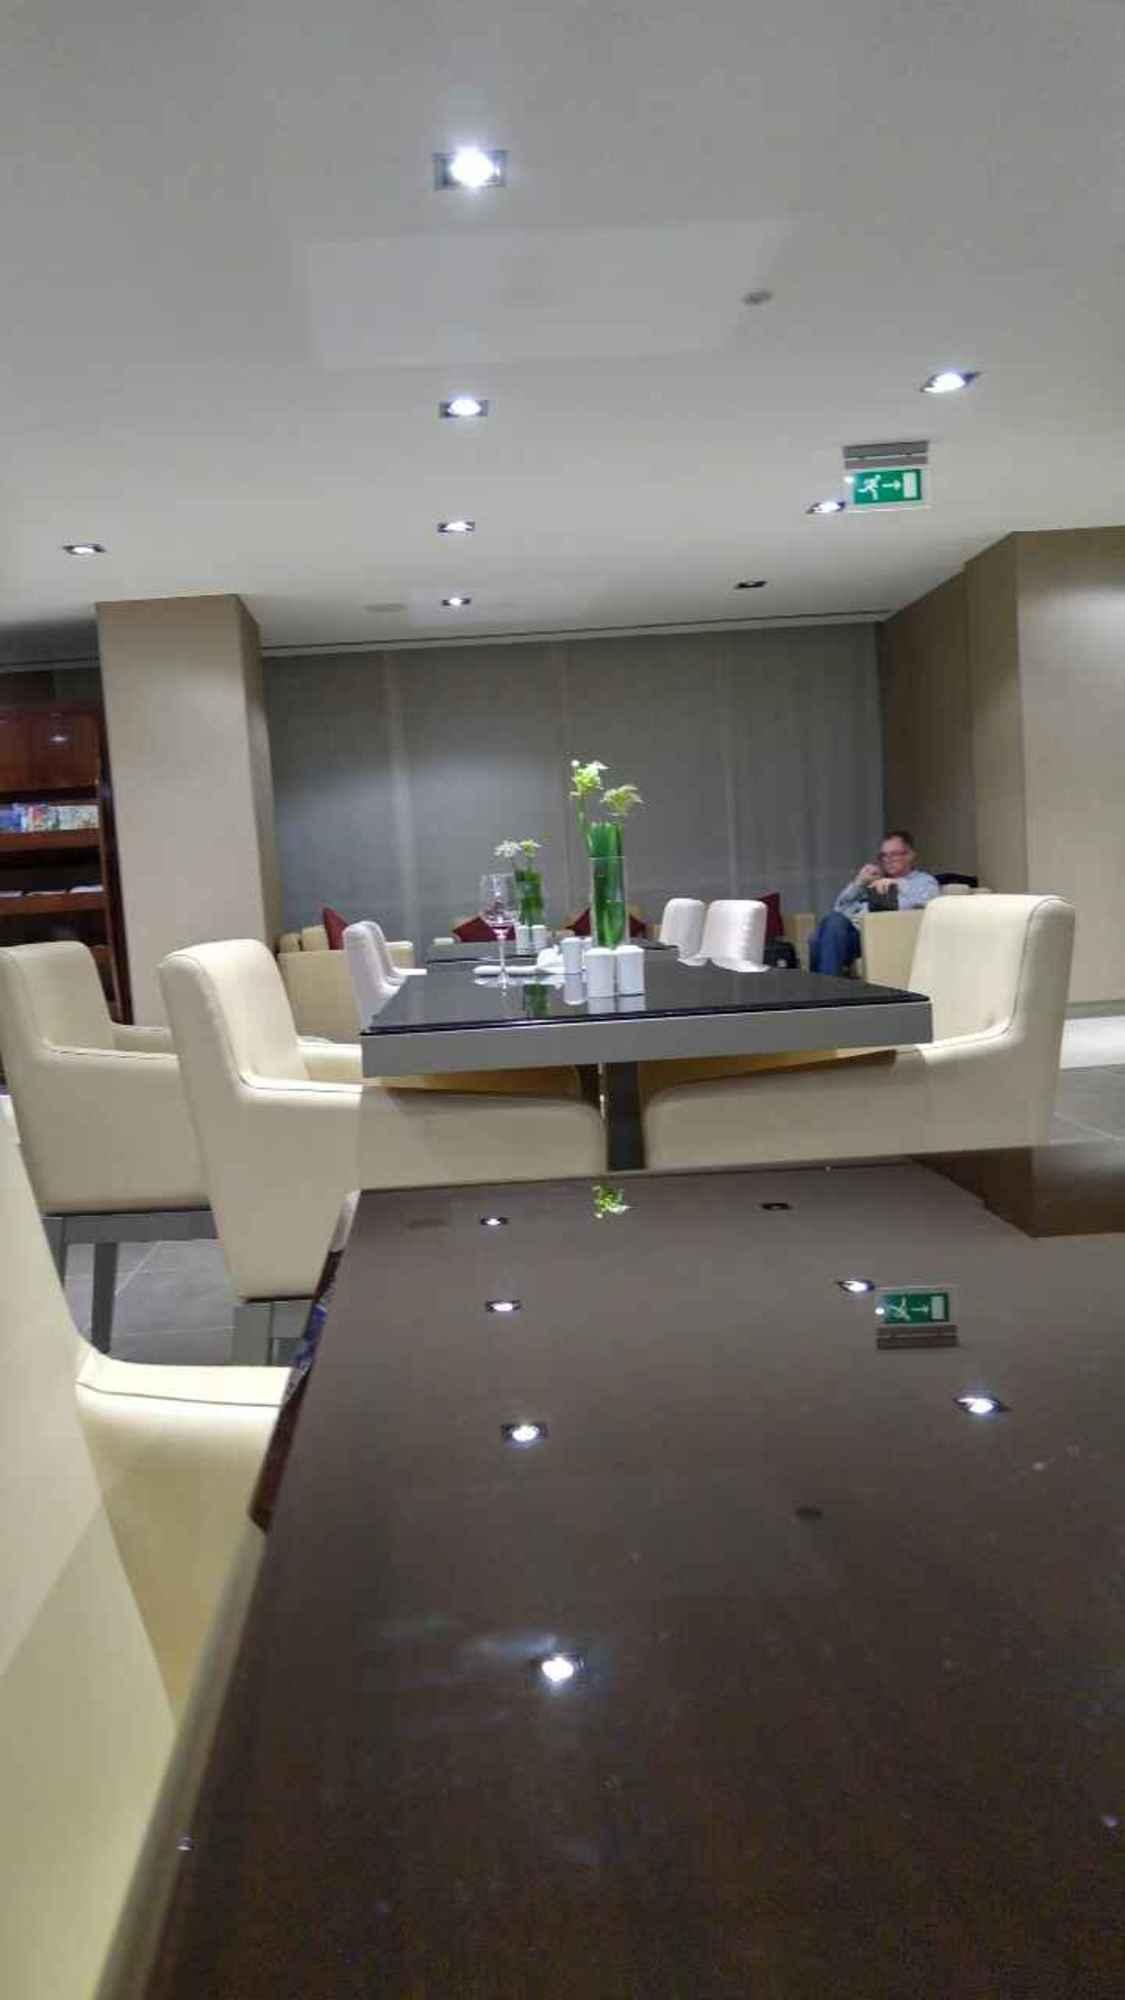 The Emirates Lounge image 1 of 5